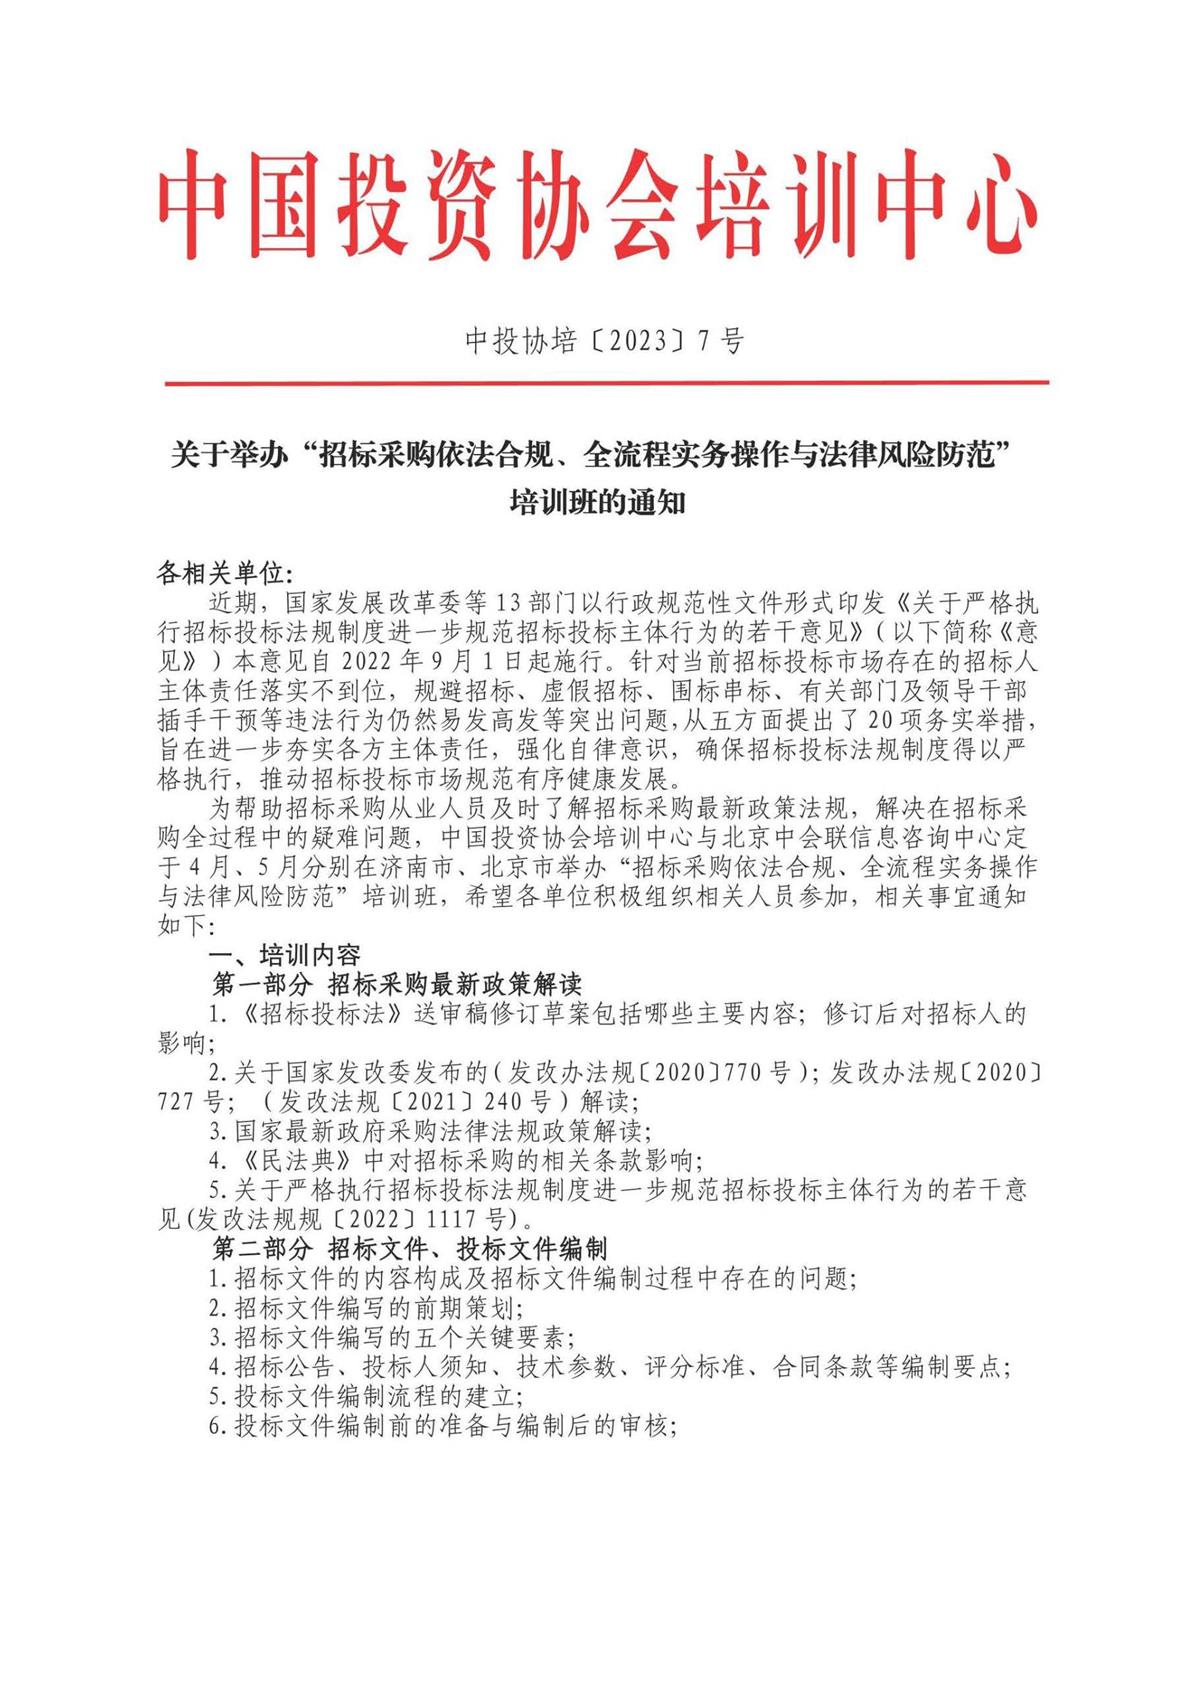 05.28-31北京招标采购培训详情_页面_1.jpg